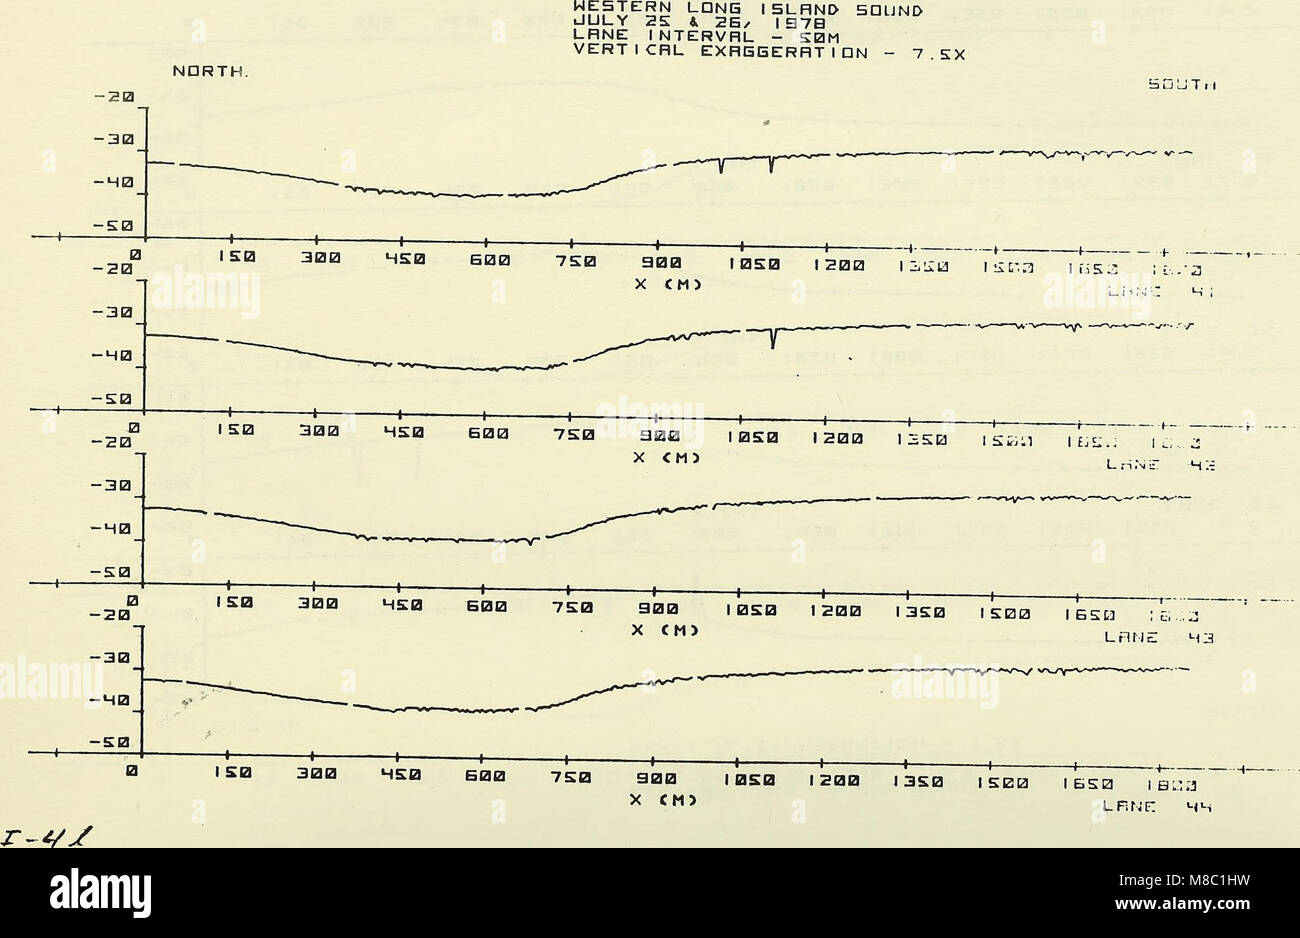 Bereich Entsorgung monitoring system jährliche Daten Report - 1978 - Beilage I Bericht - Western Long Island Sound (1979) (20980824031) Stockfoto